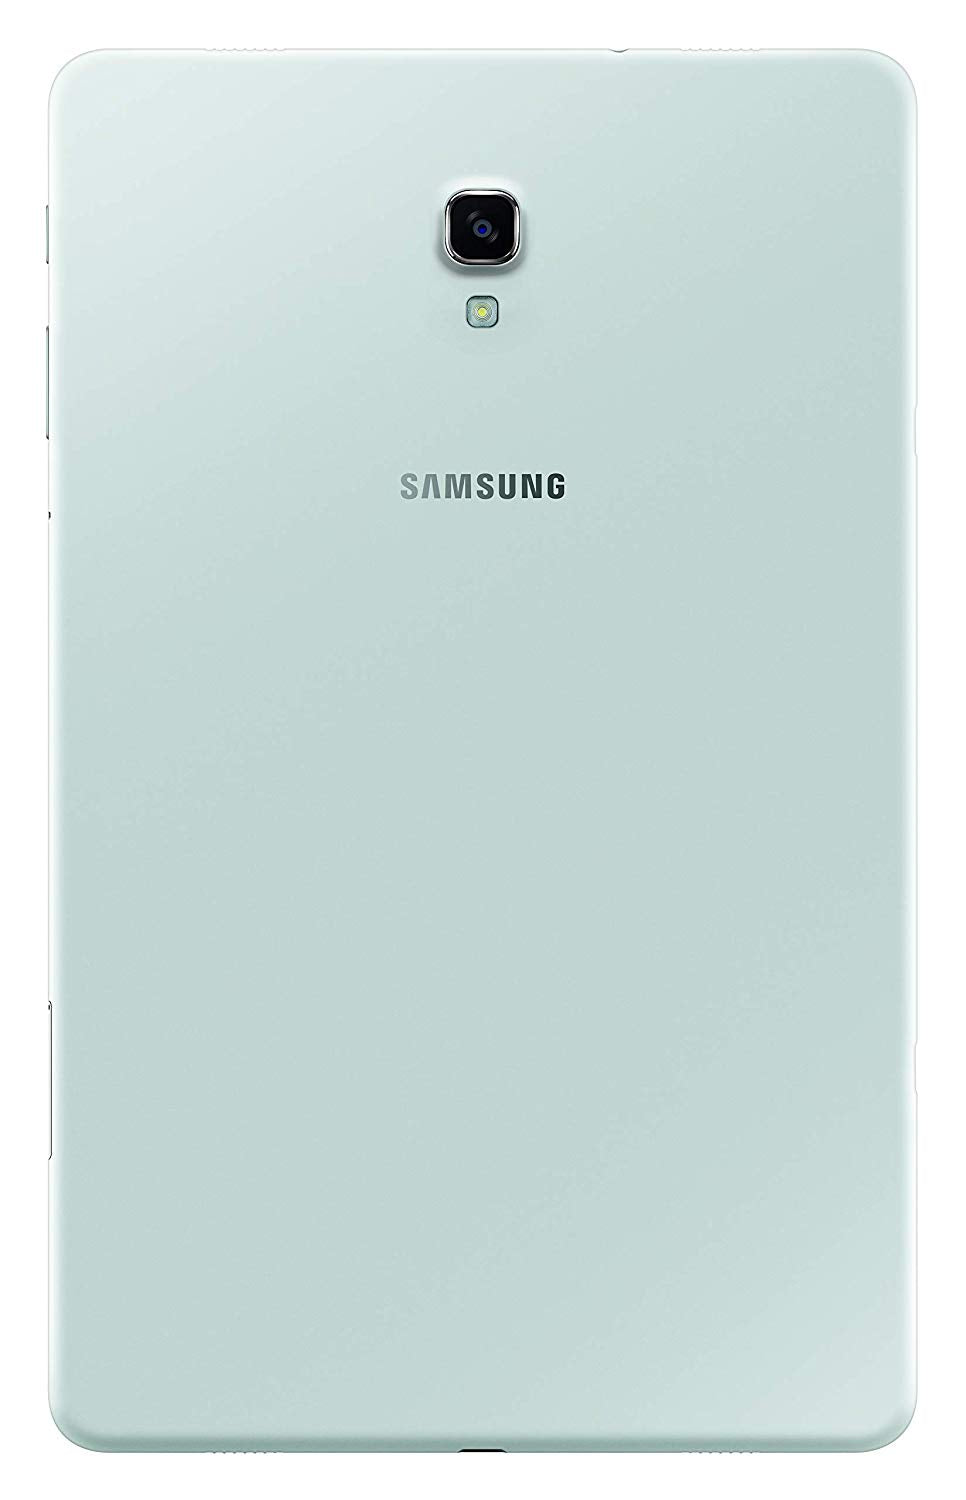 Samsung Galaxy Tab A 10.5 32GB Tablet, Grey - Model SM-T590NZAAXAR